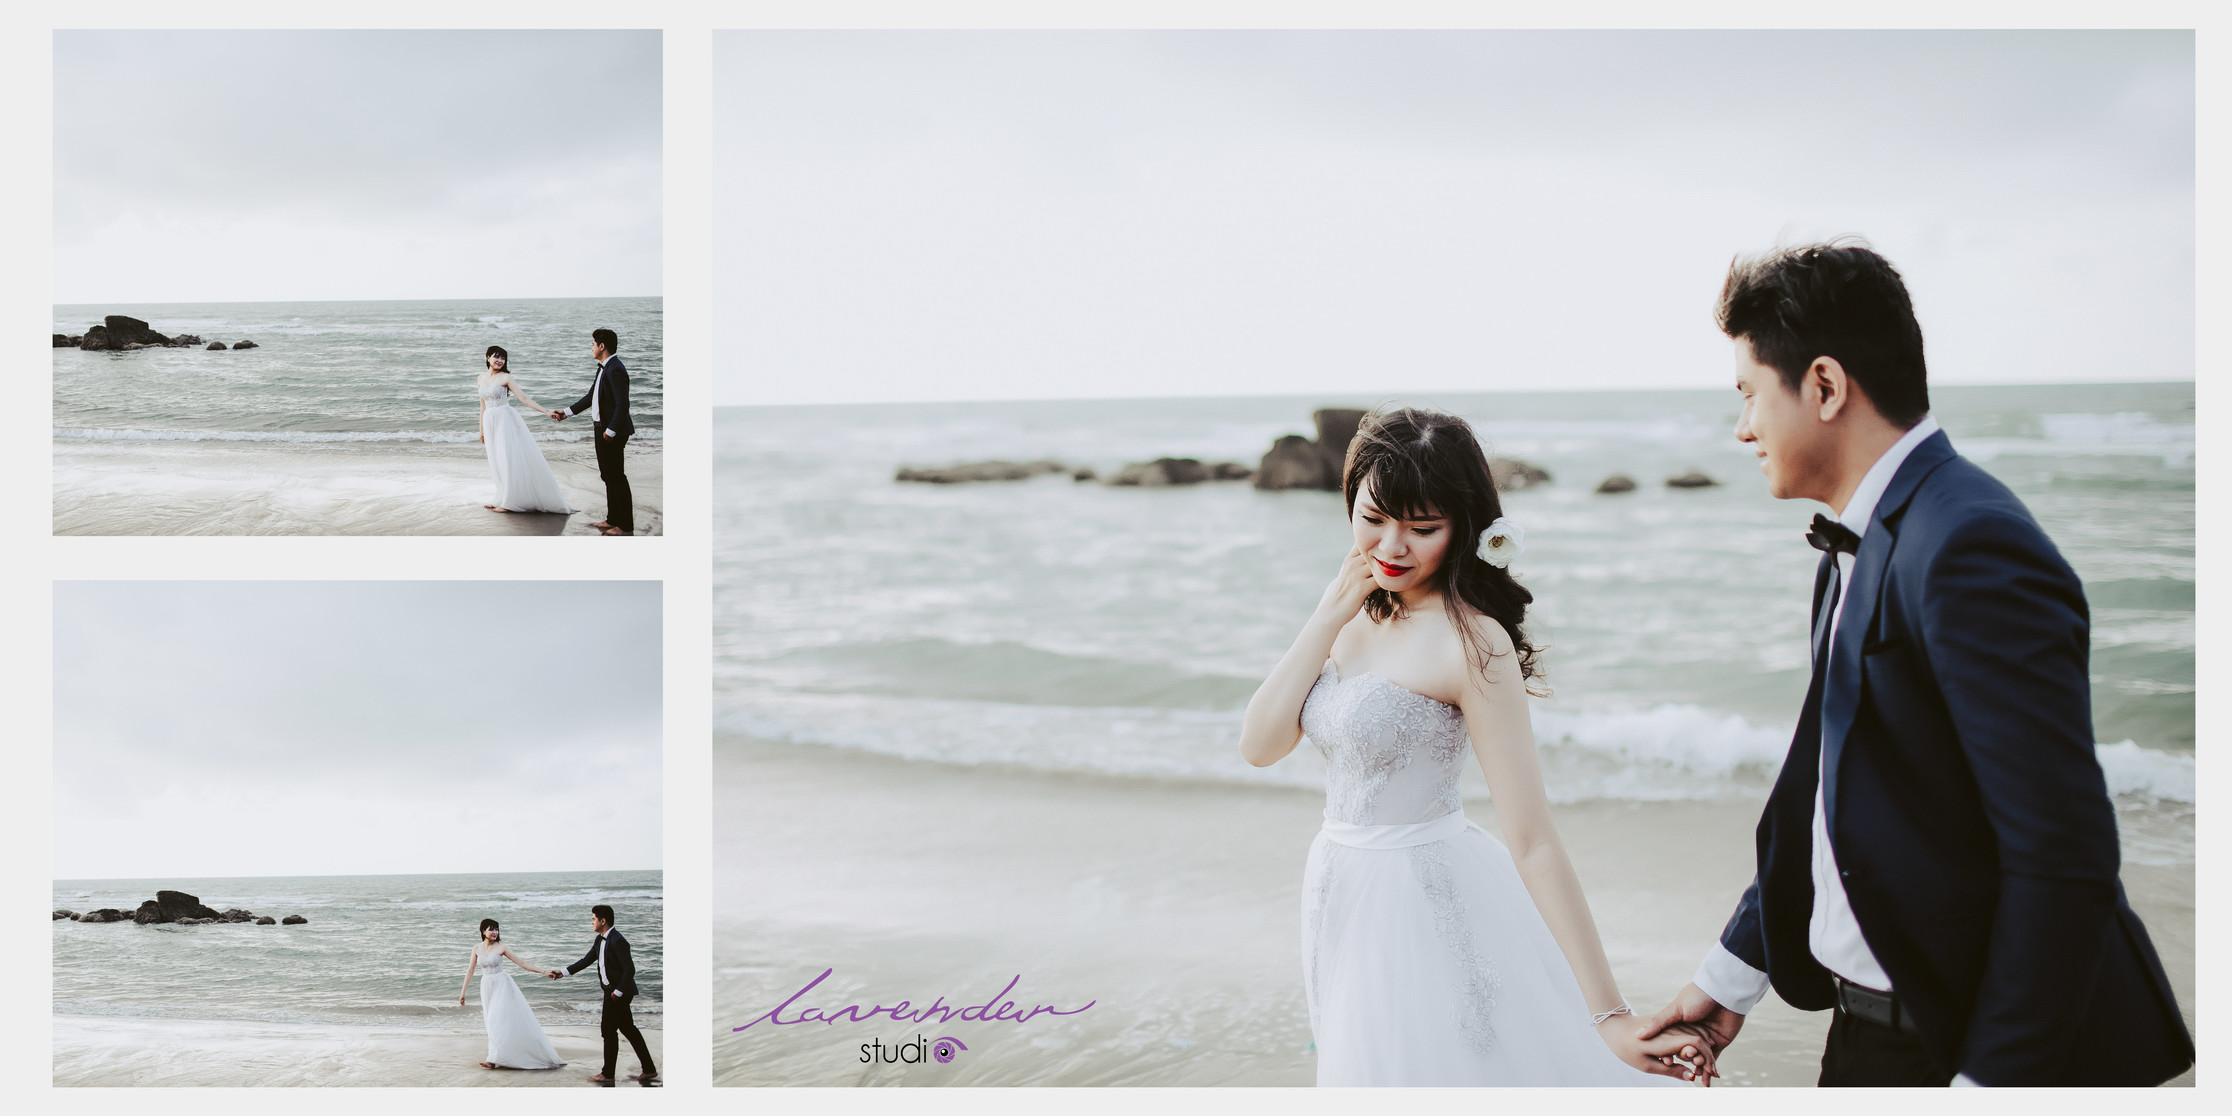 Phim trường chụp hình cưới tại Hồ Cốc Hồ Tràm của lavender studio